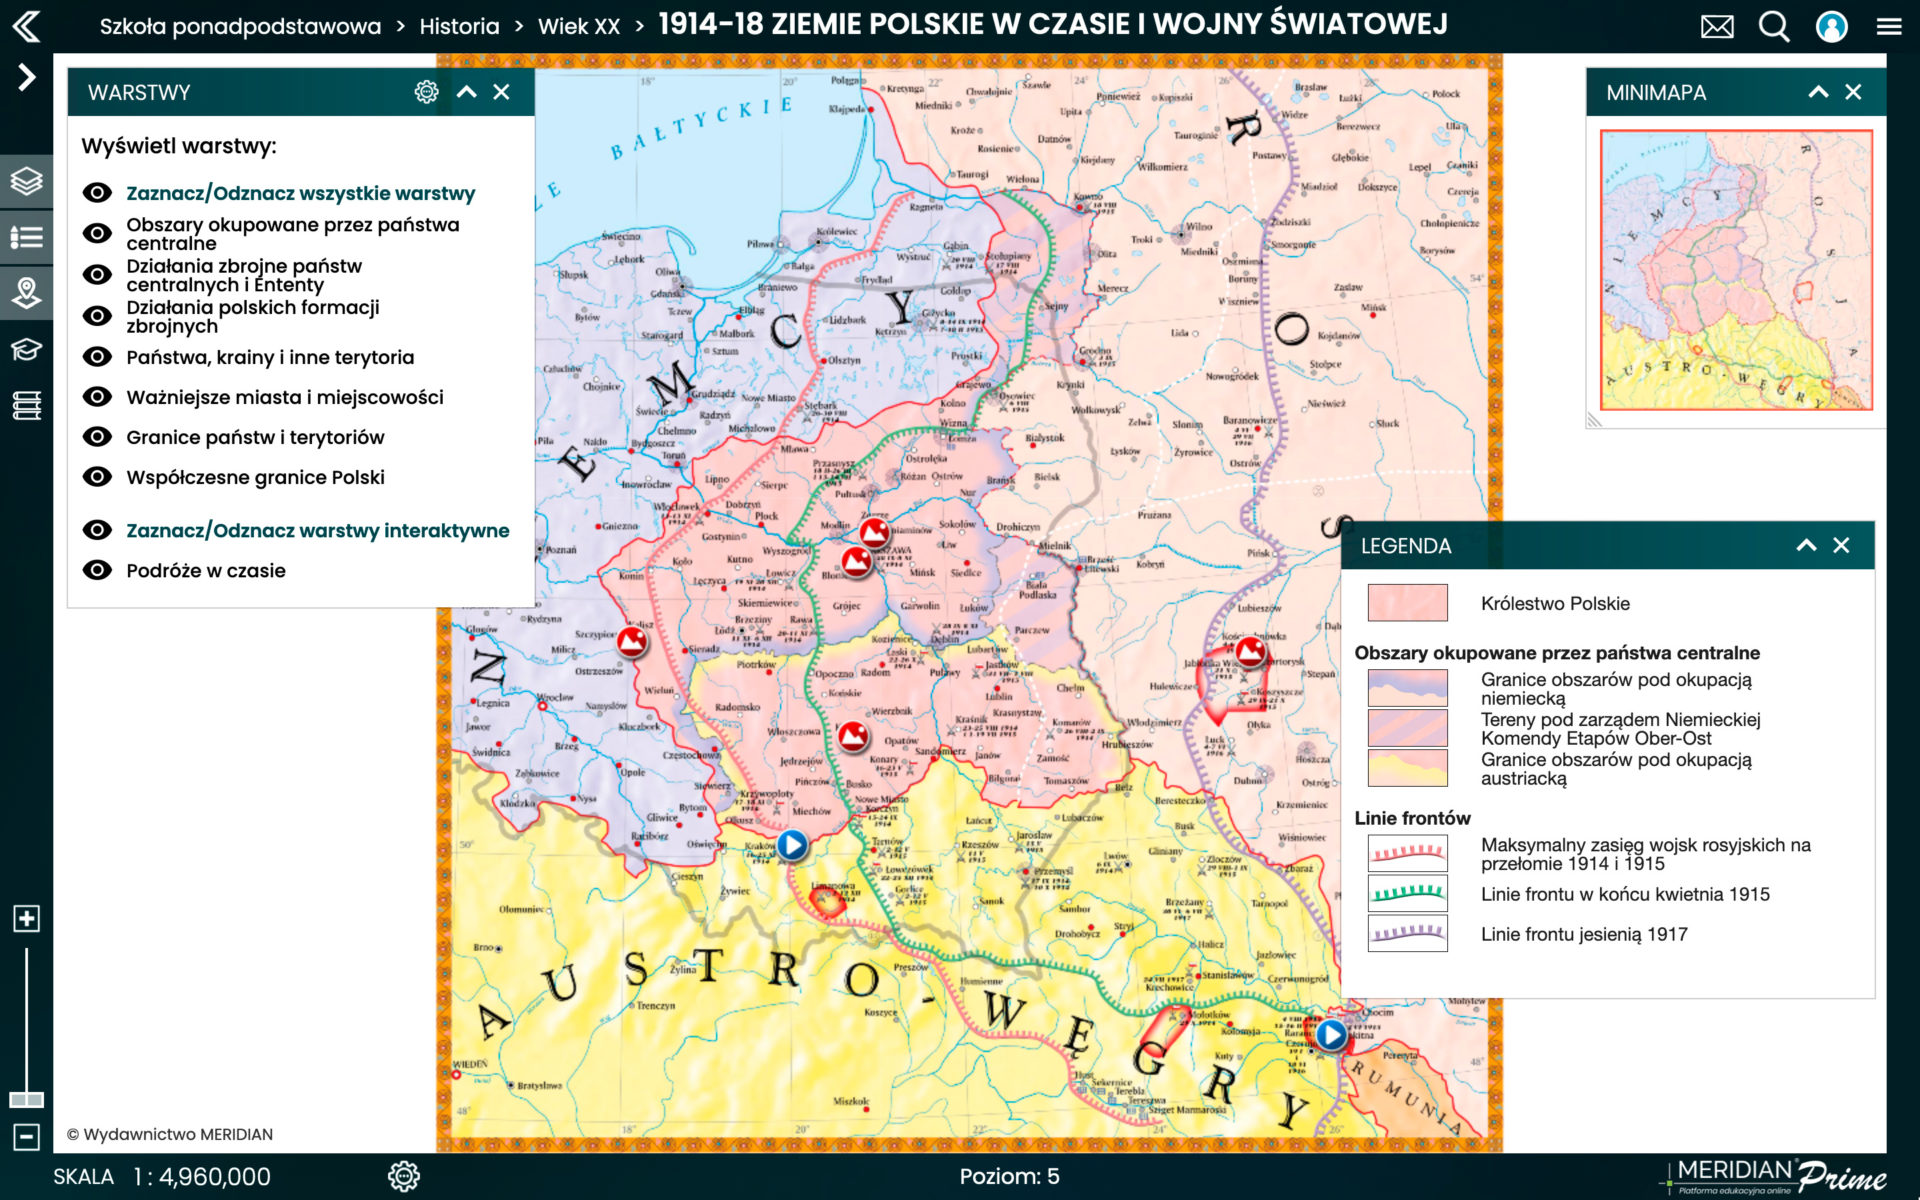 1914-1918 Ziemie polskie w czasie I wojny światowej